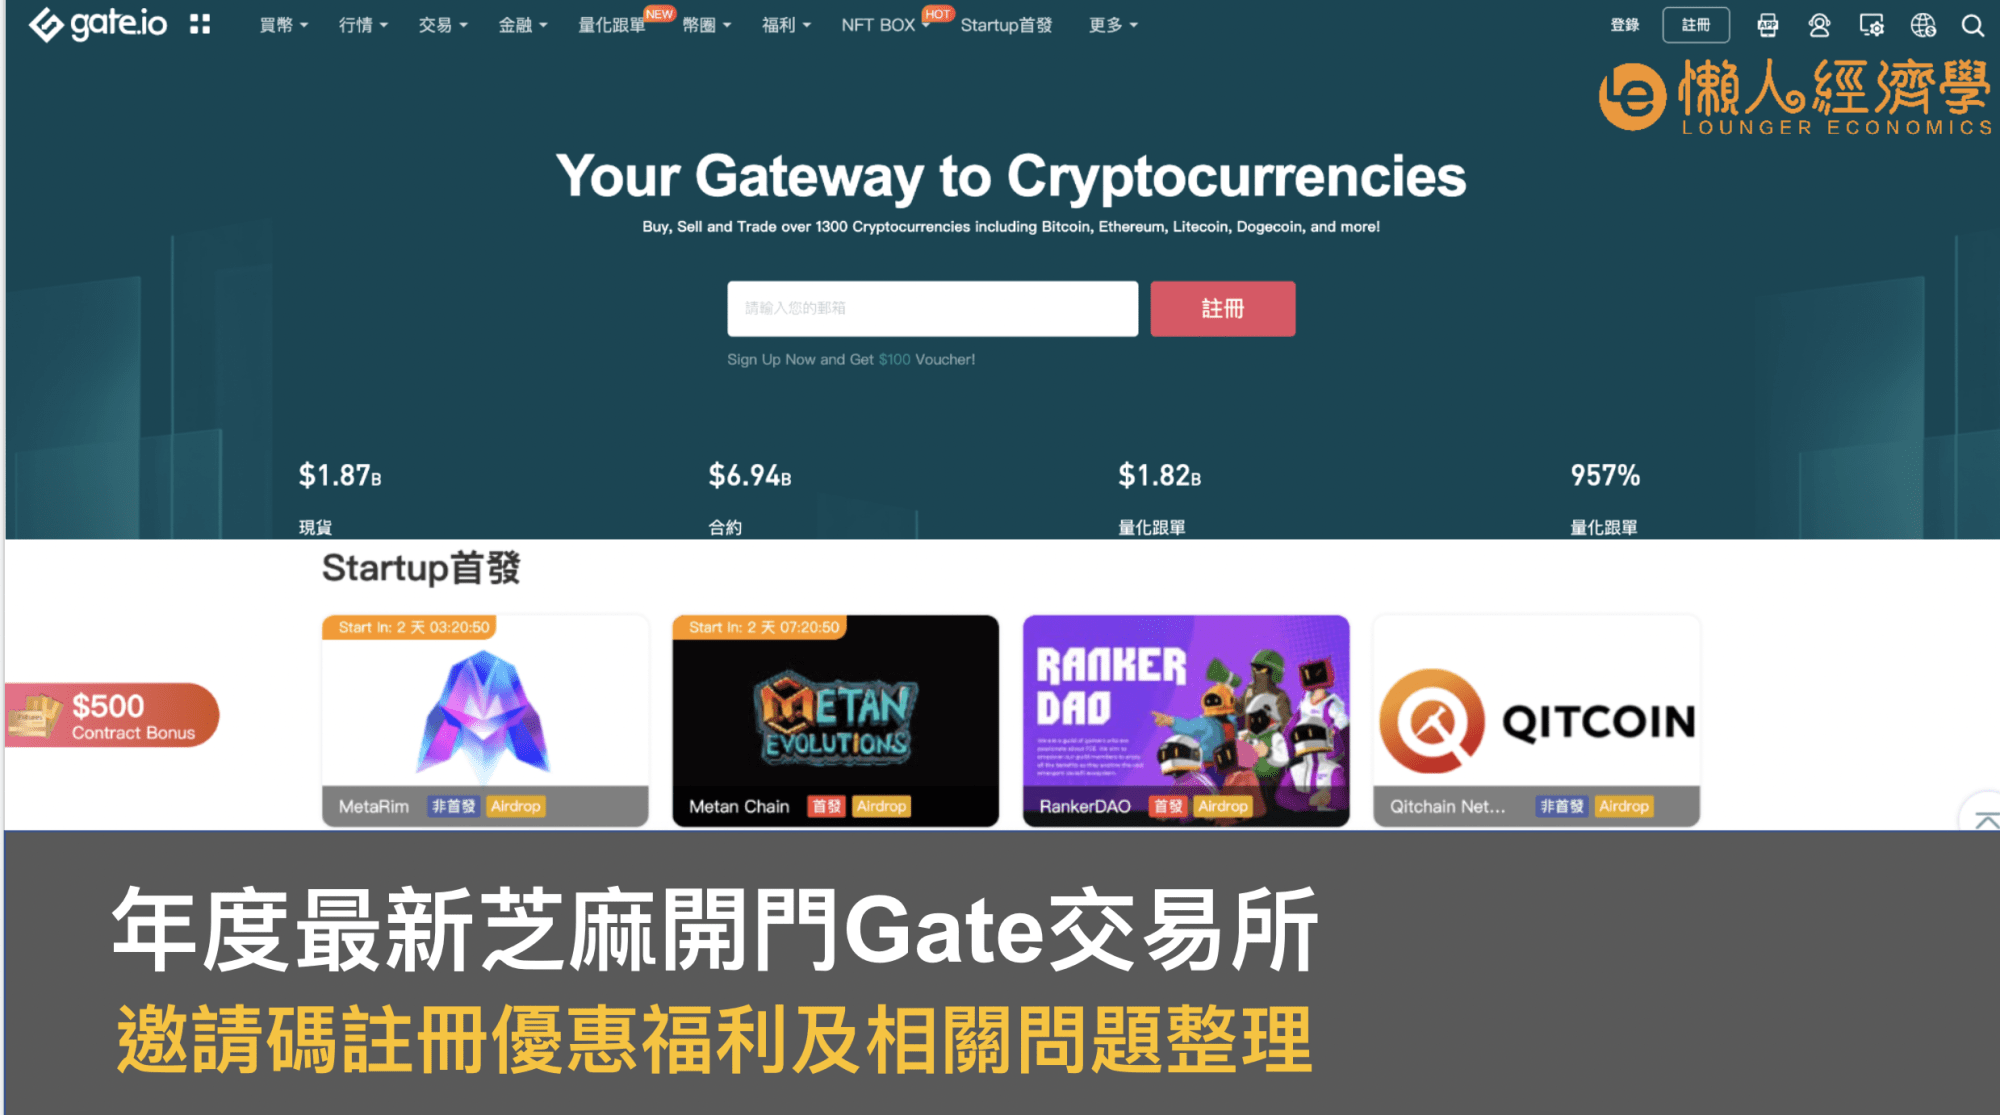 Gate.io 邀請推薦碼送20%手續費返佣、5,500U理財體驗金，芝麻開門優惠福利及相關問題整理